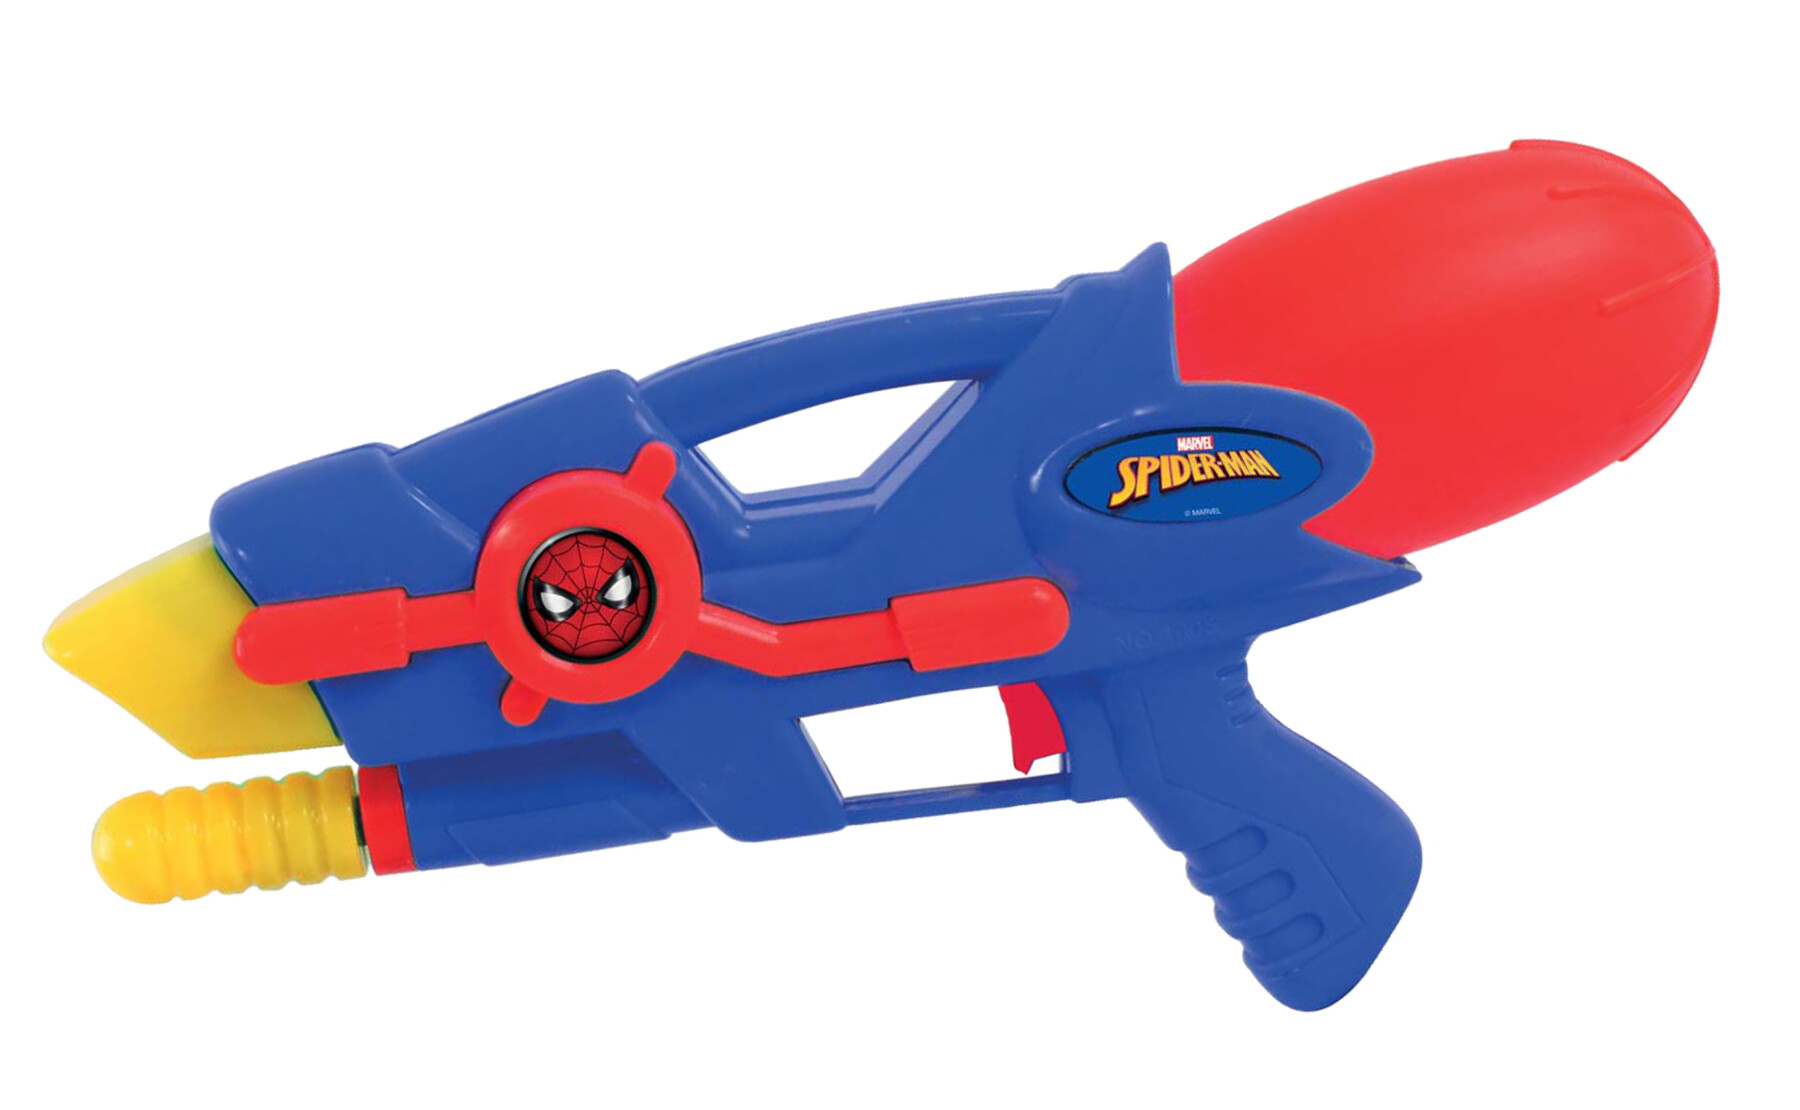 Mitraglietta spara acqua personalizzata spiderman da 29 cm - Avengers, Spiderman